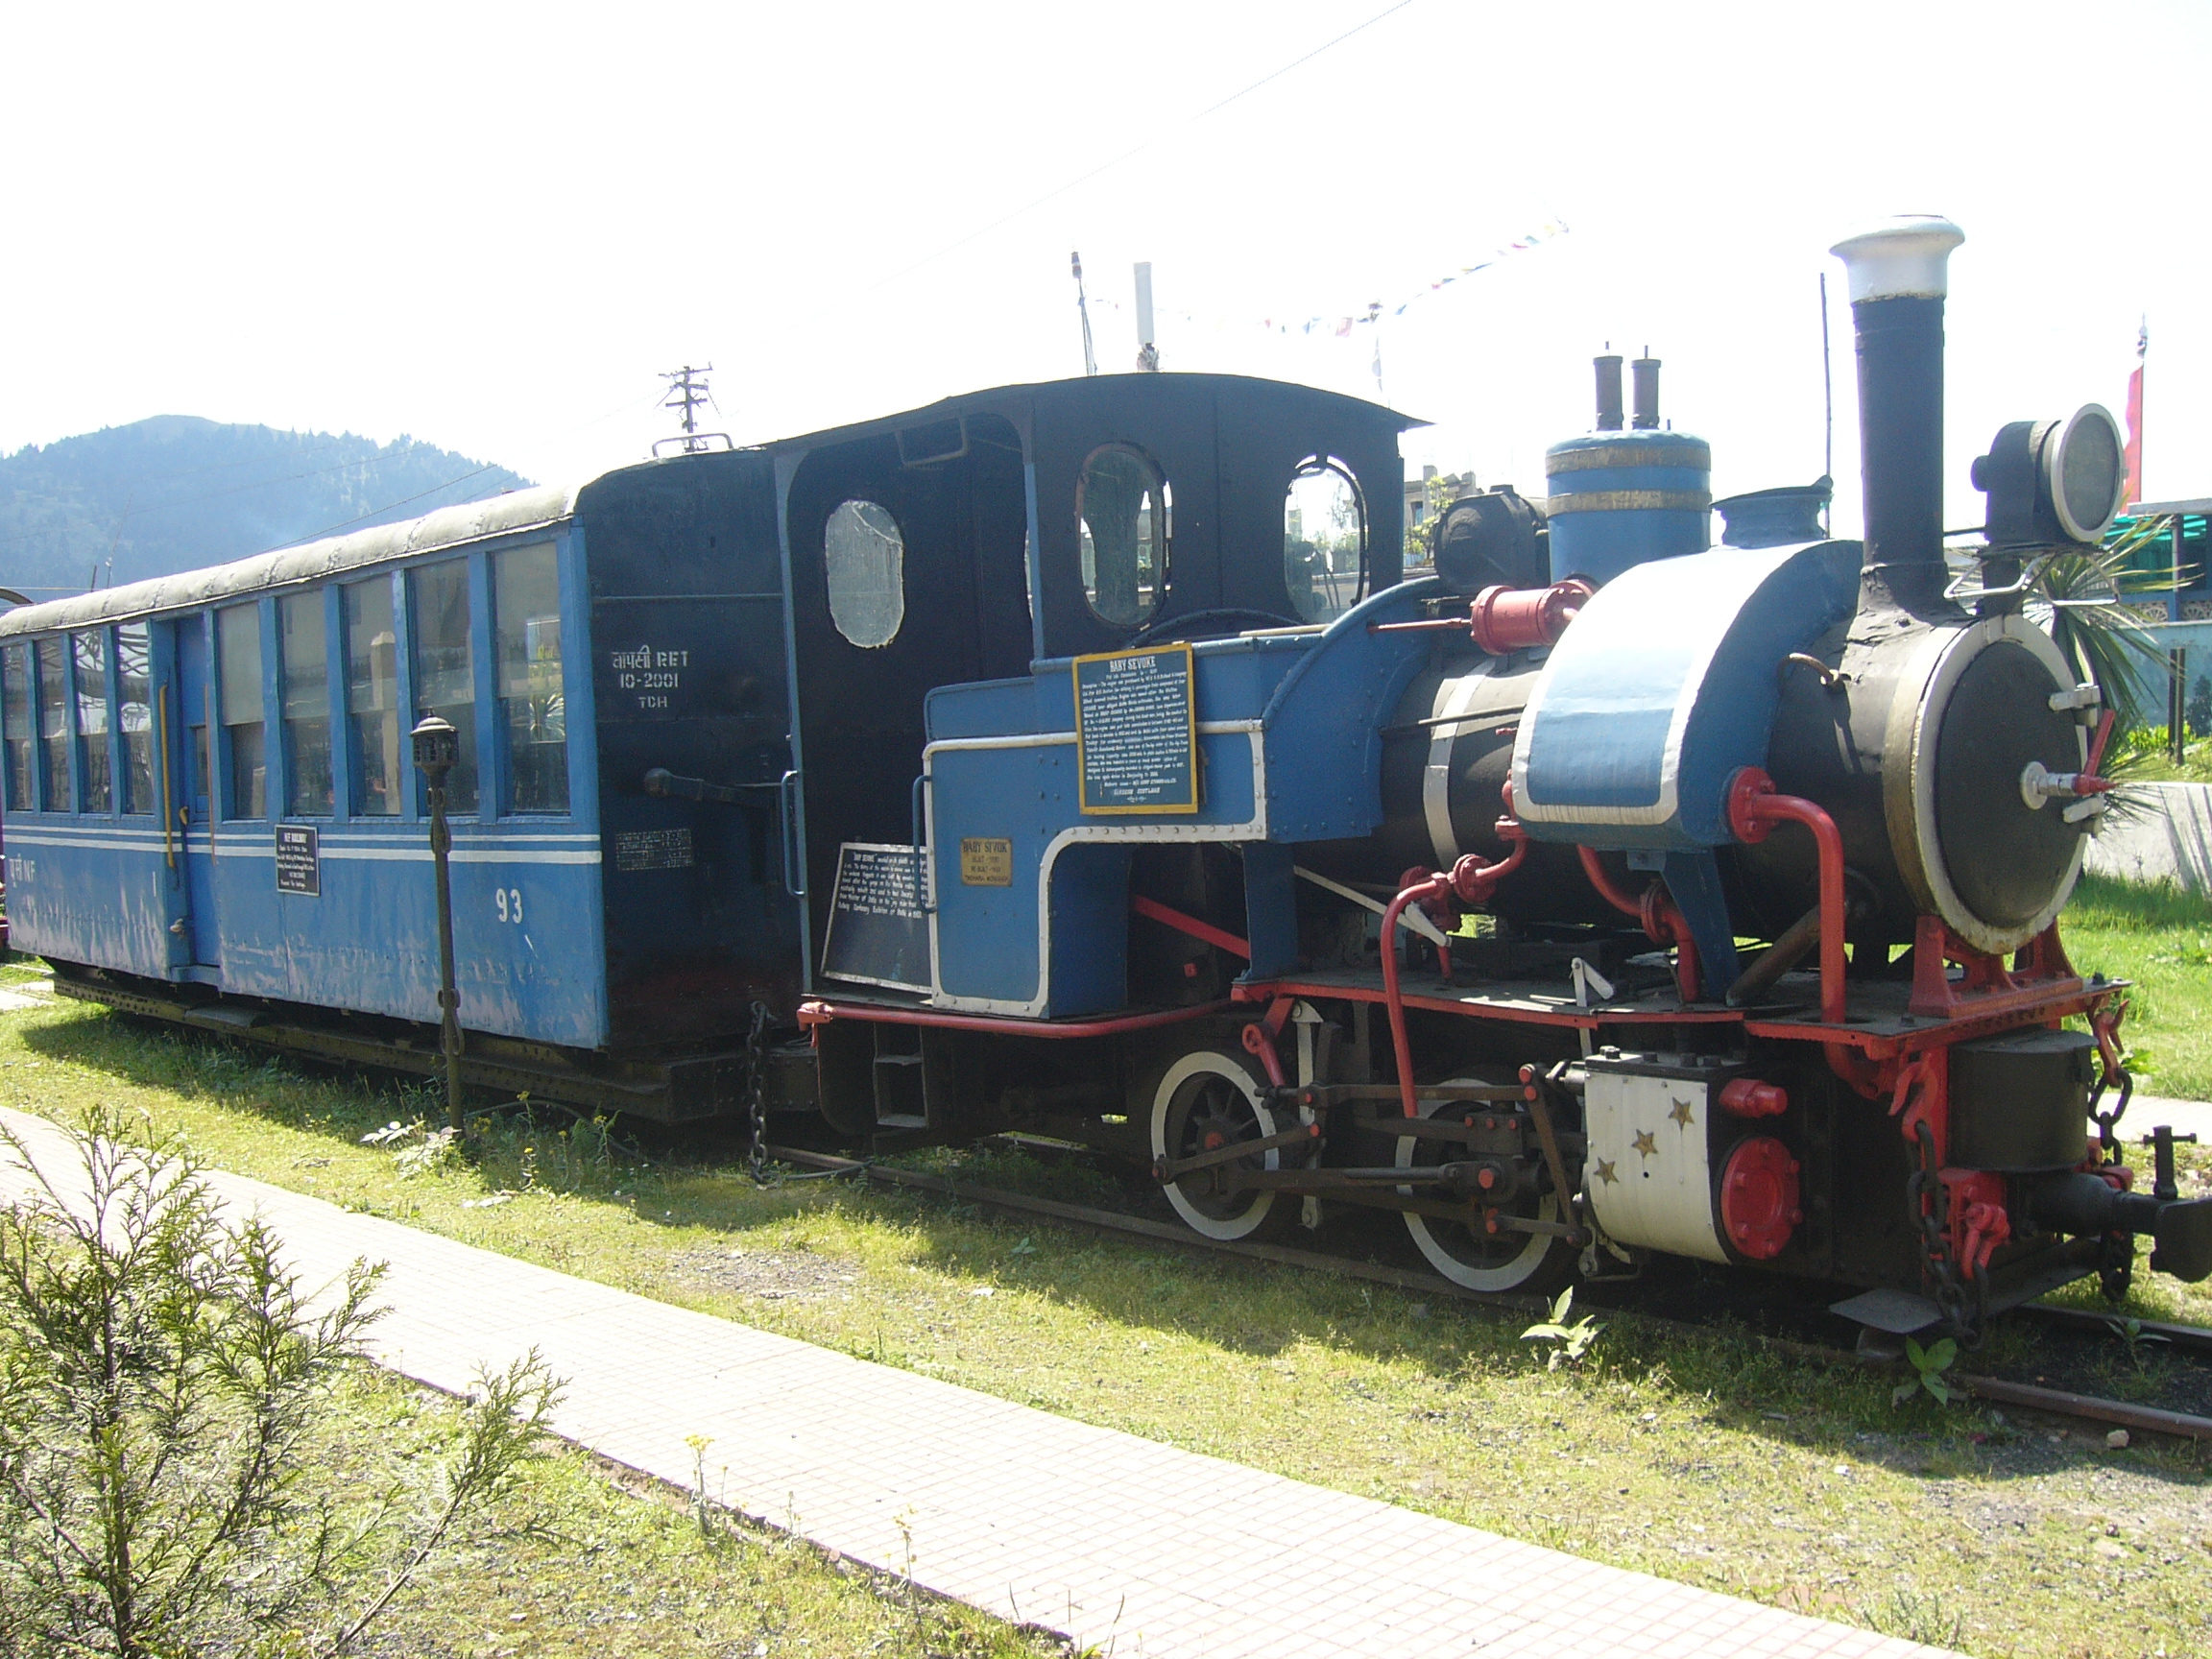 Darjeeling Toy Train ride